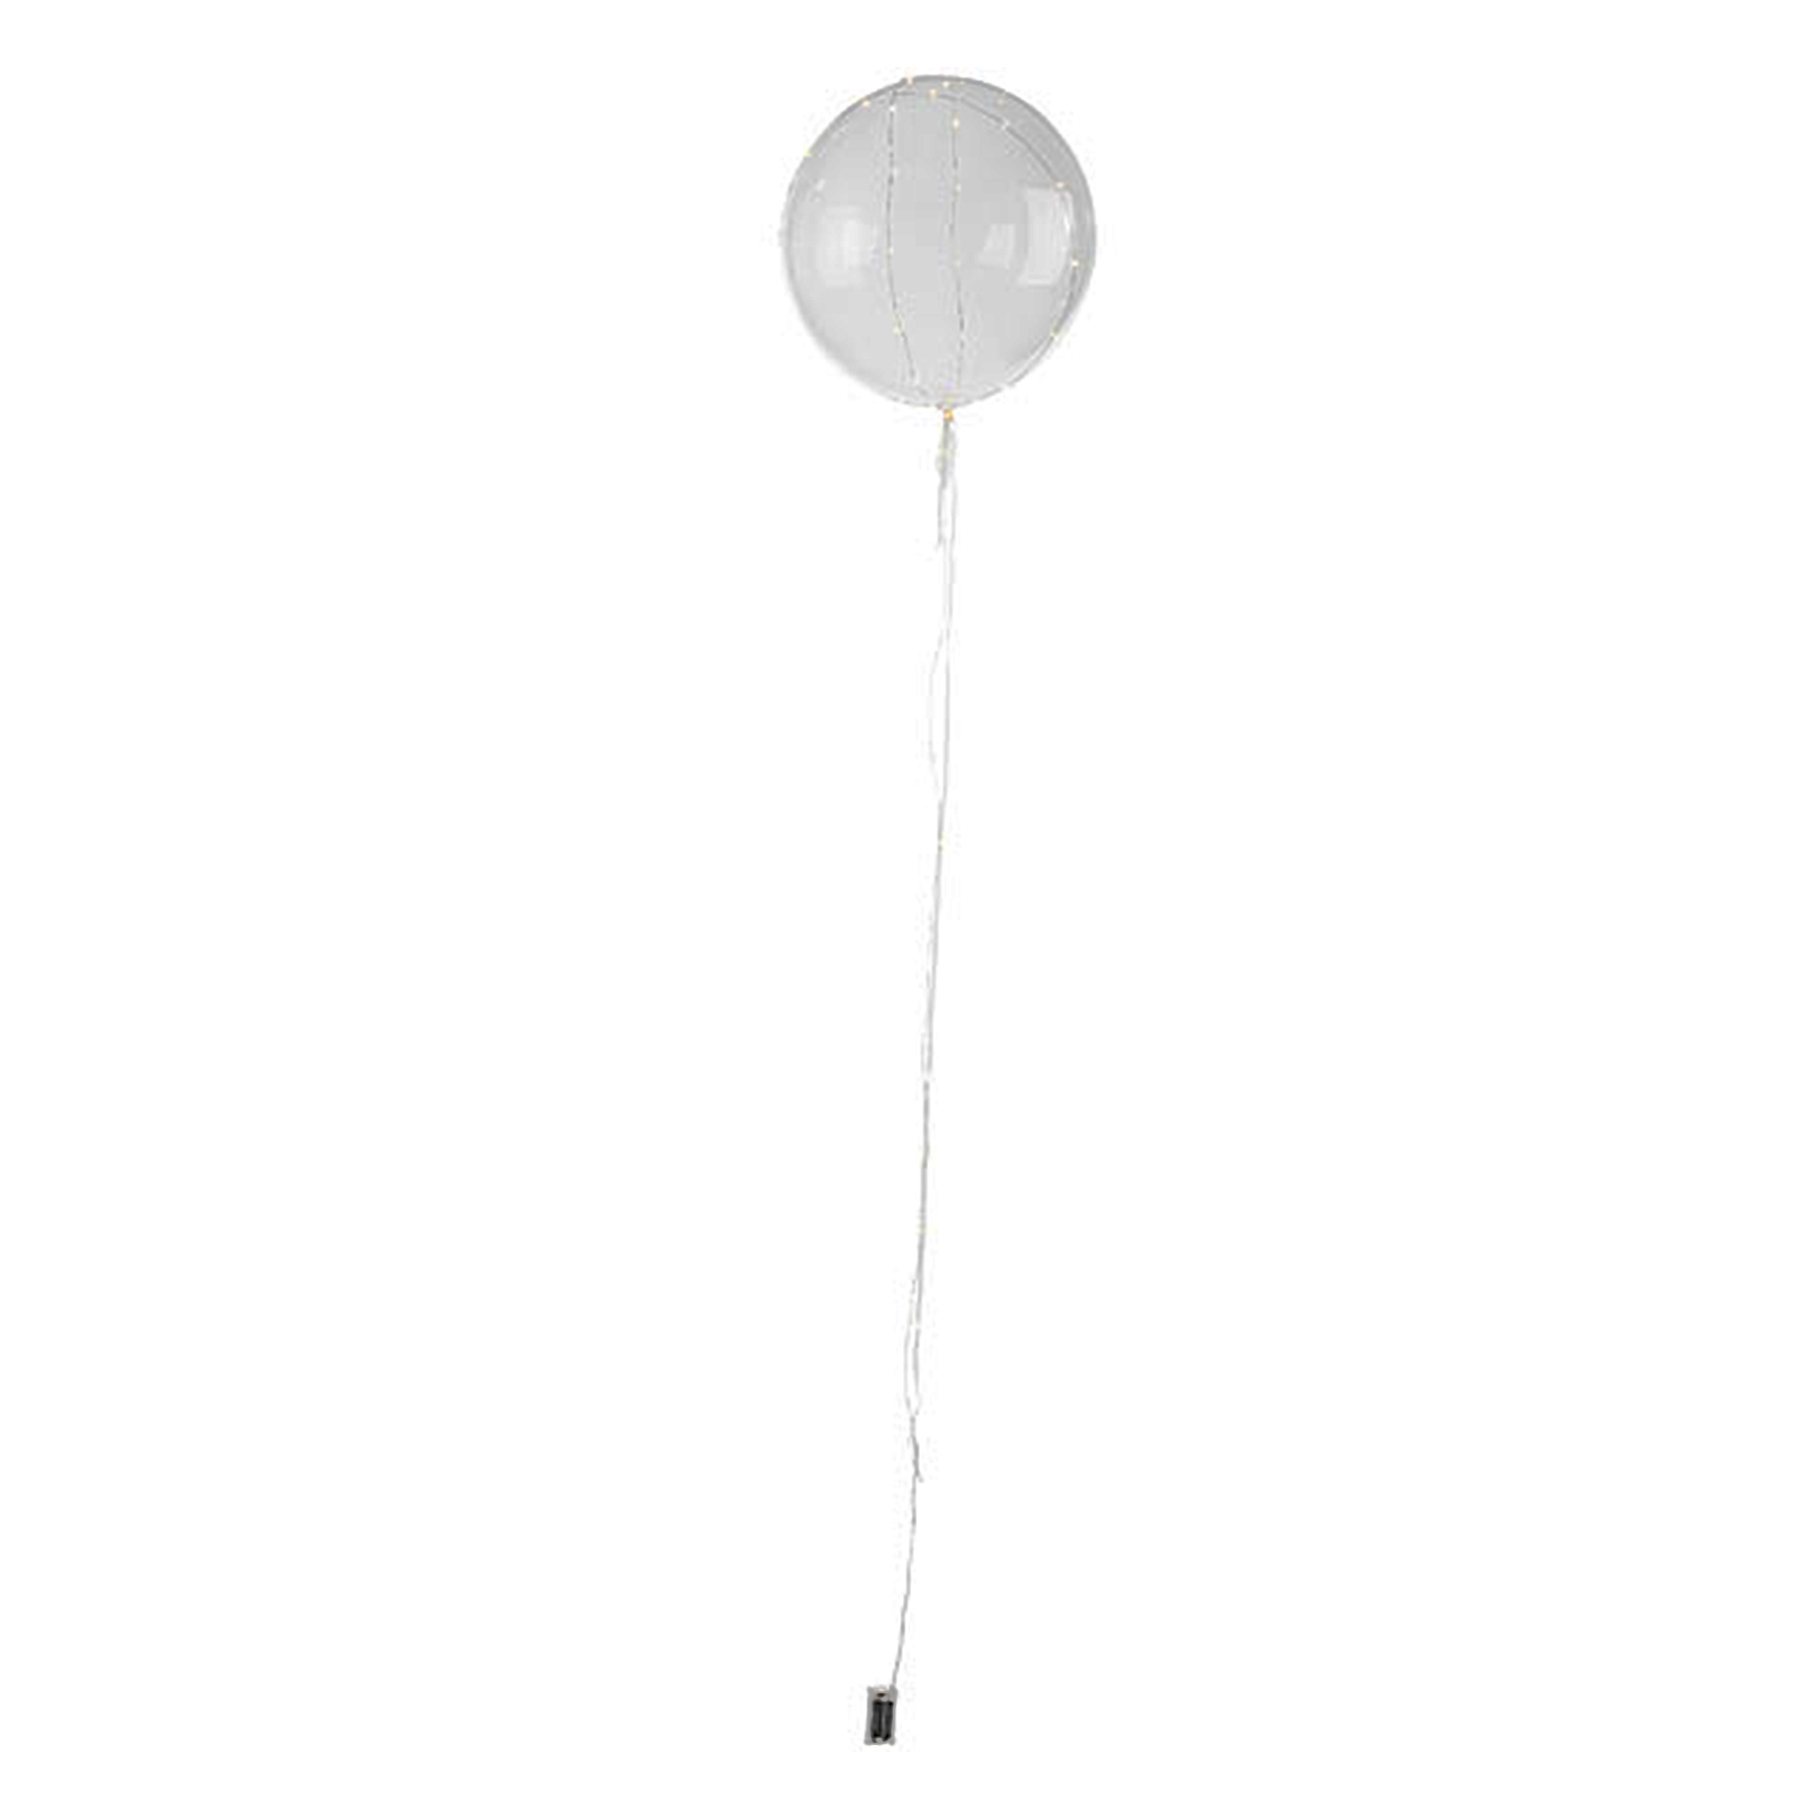 Luftballon mit Lichterkette - LED Ballon 3837 - 1